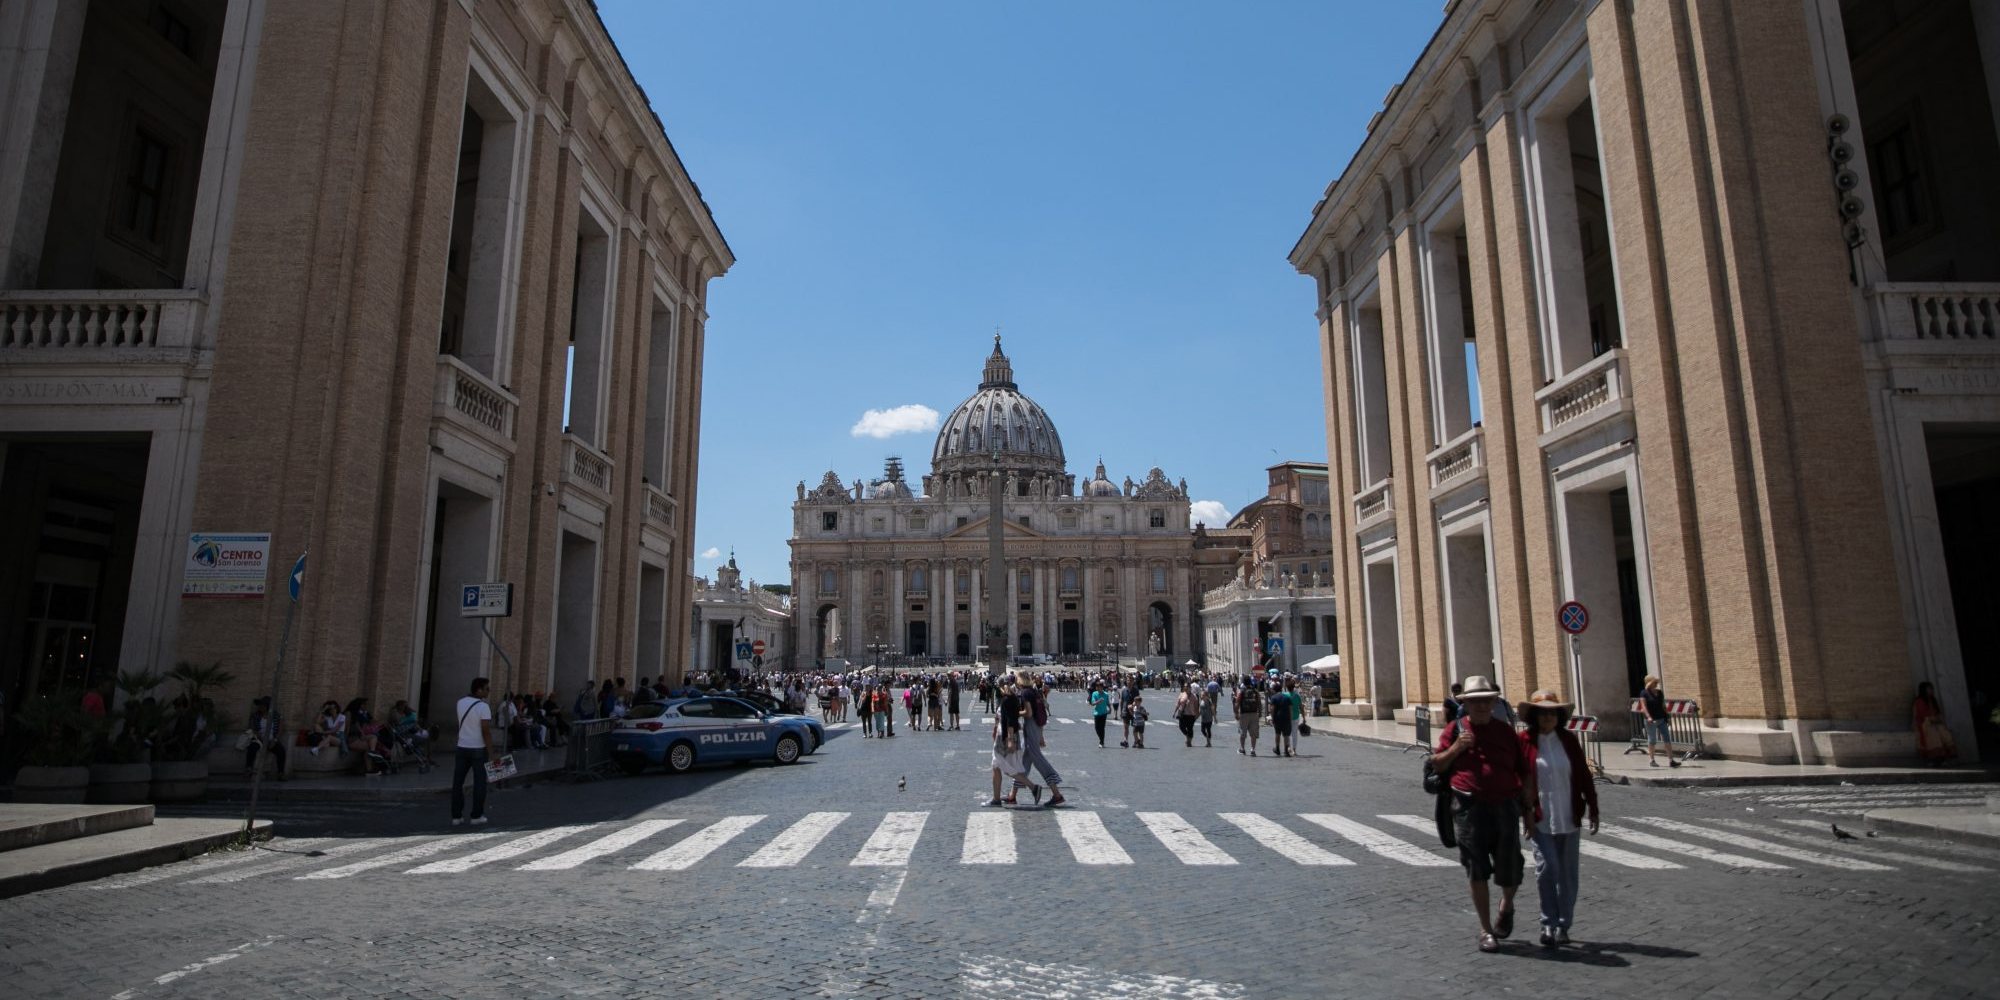 Uma delegação de bispos portugueses esteve esta semana em Roma para reuniões com a cúpula da Igreja Católica